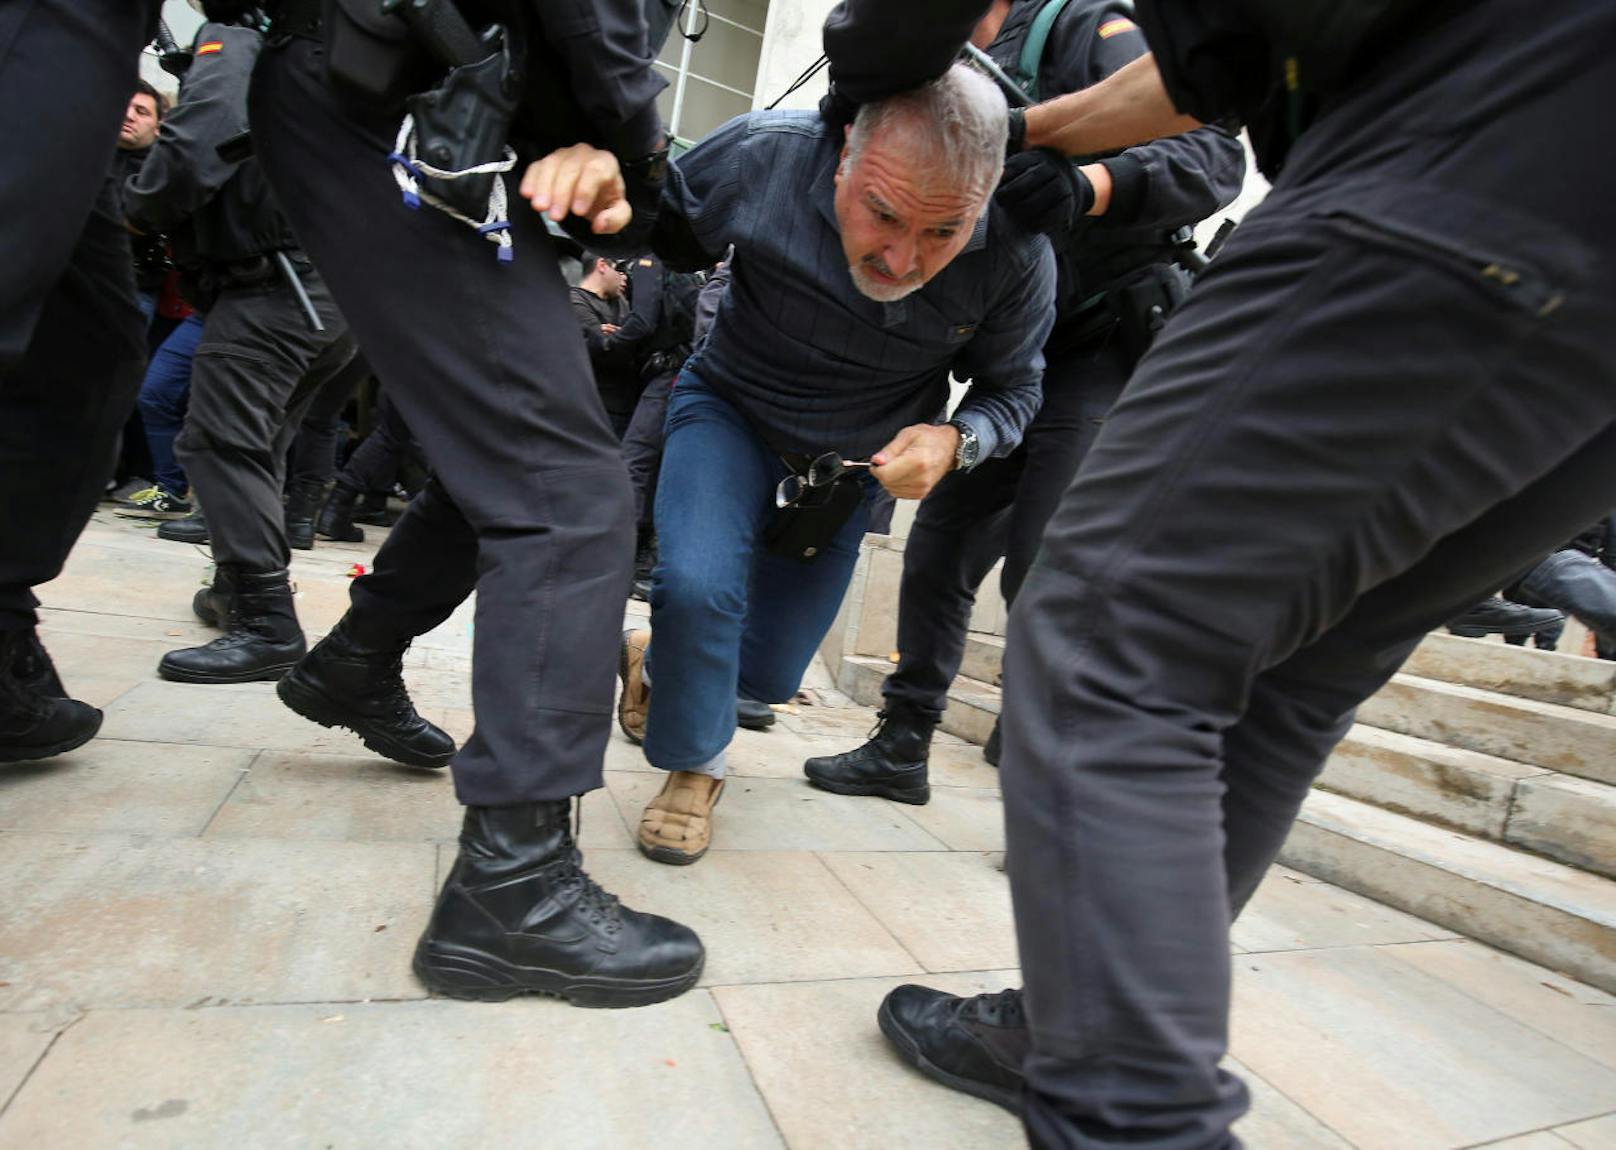 Die Katalanen wollen über ihre Unabhängigkeit abstimmen: Die spanische Polizei spricht von einem "illegalen Referendum" und geht gewaltsam gegen die Wähler vor (1. Oktober 2017).